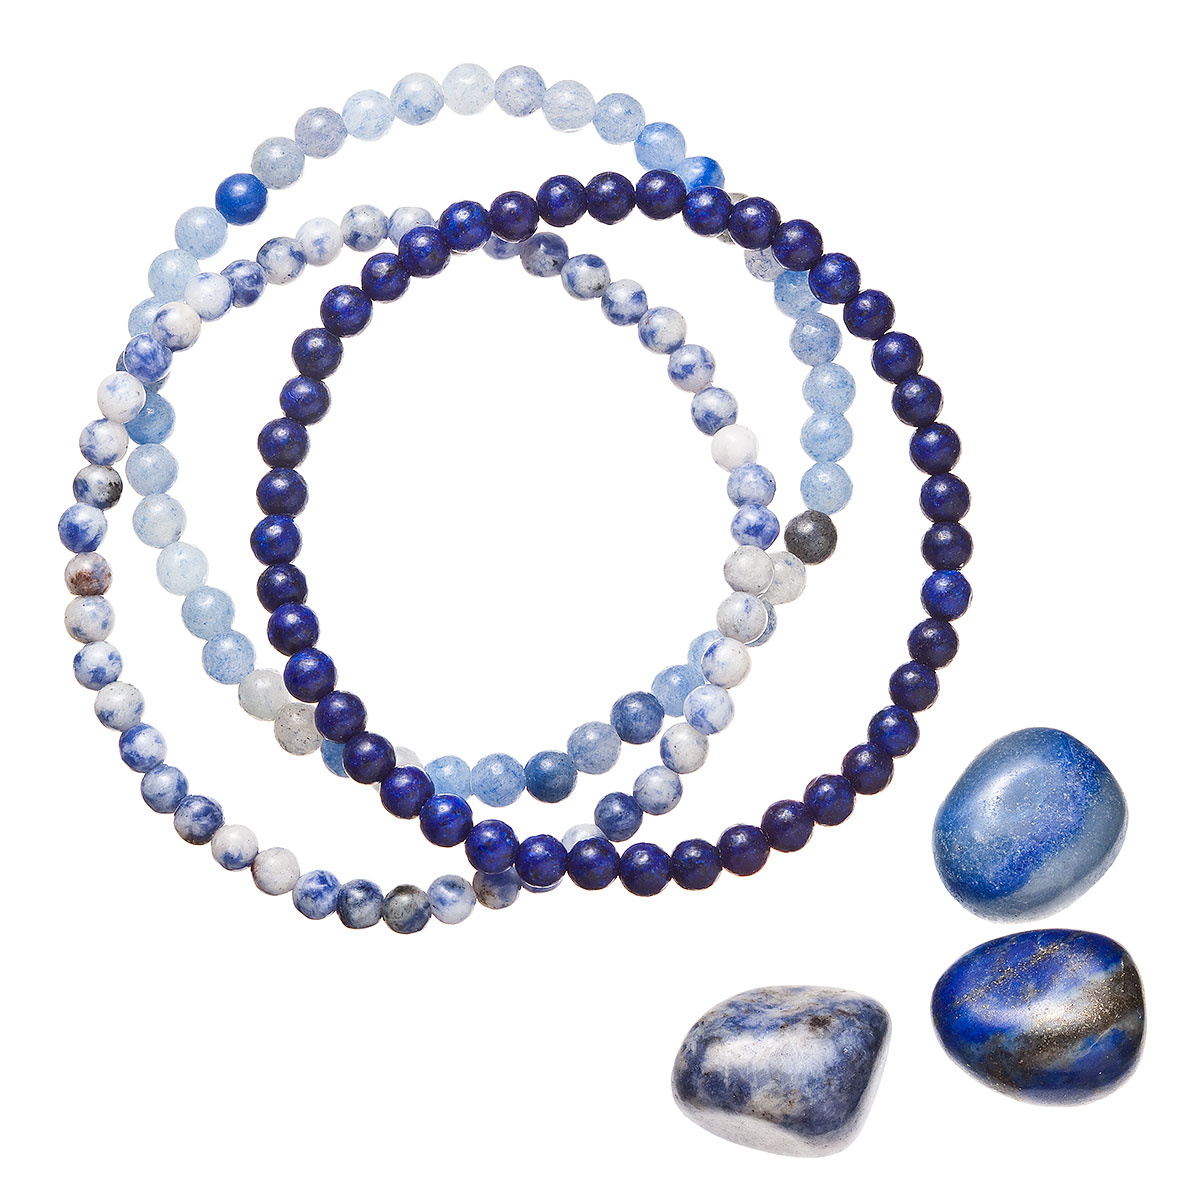 Evolution Group Náramky s minerálními kameny sodalit, avanturín a lapis lazuli 43043.3 modrý